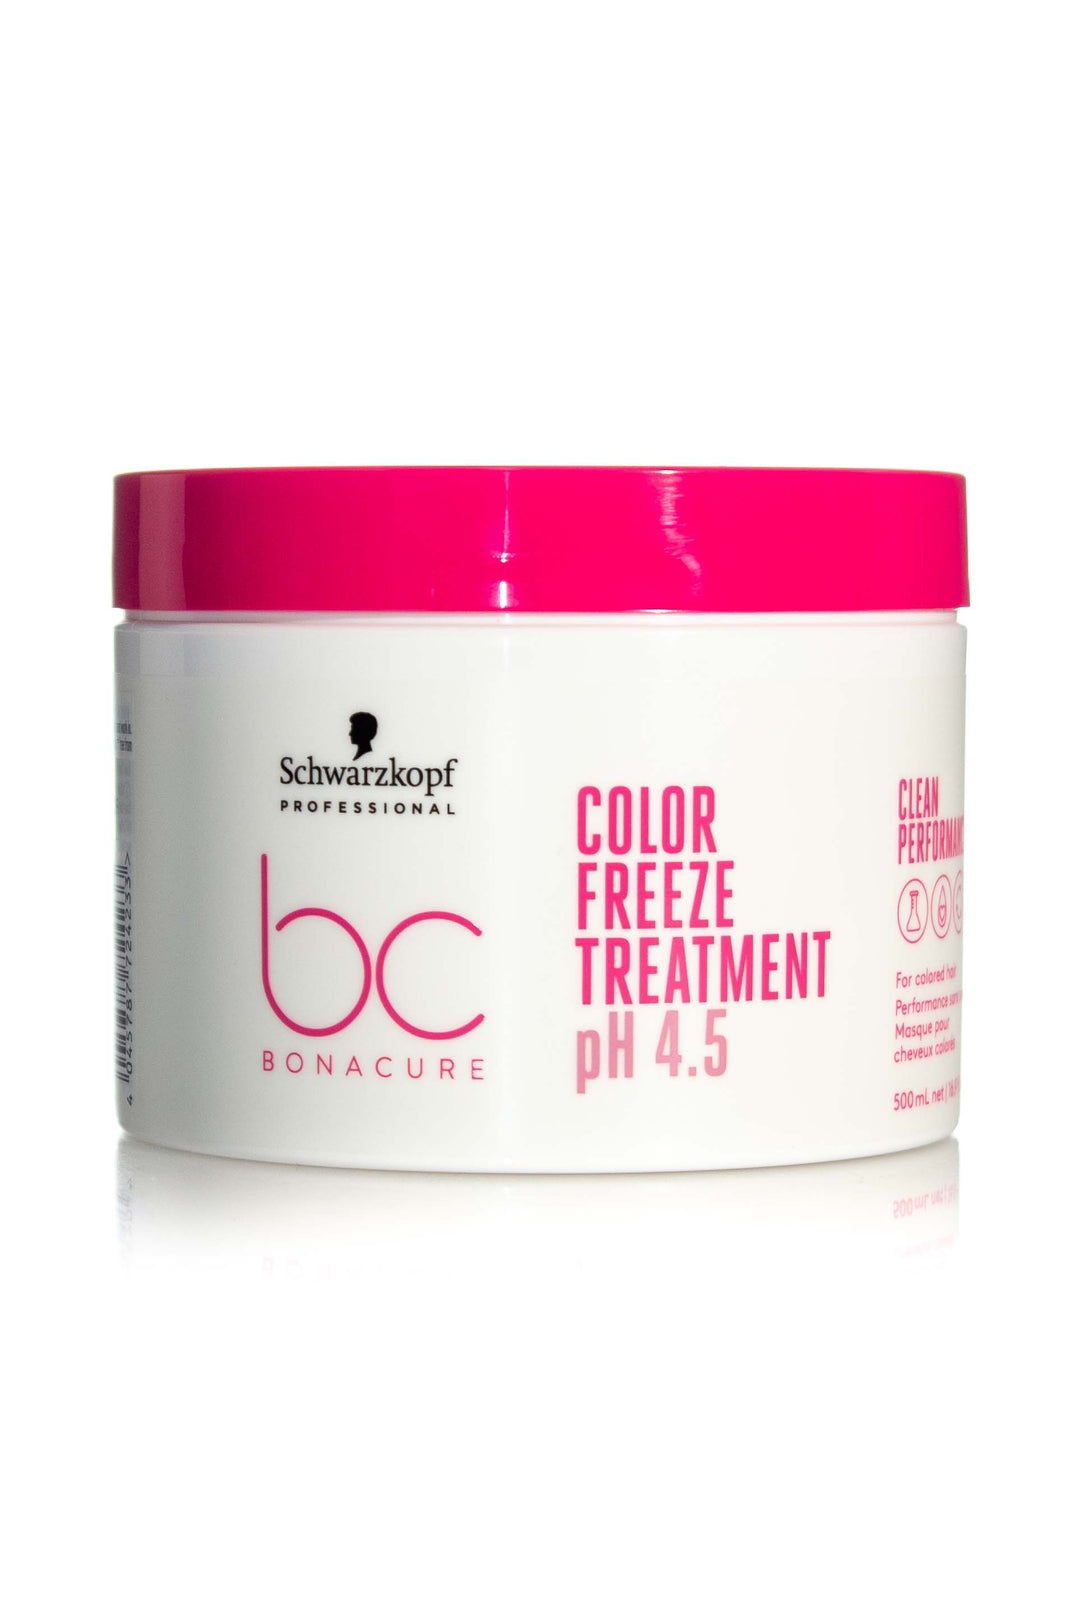 SCHWARZKOPF BONACURE Clean Performance Ph 4.5 Color Freeze Treatment